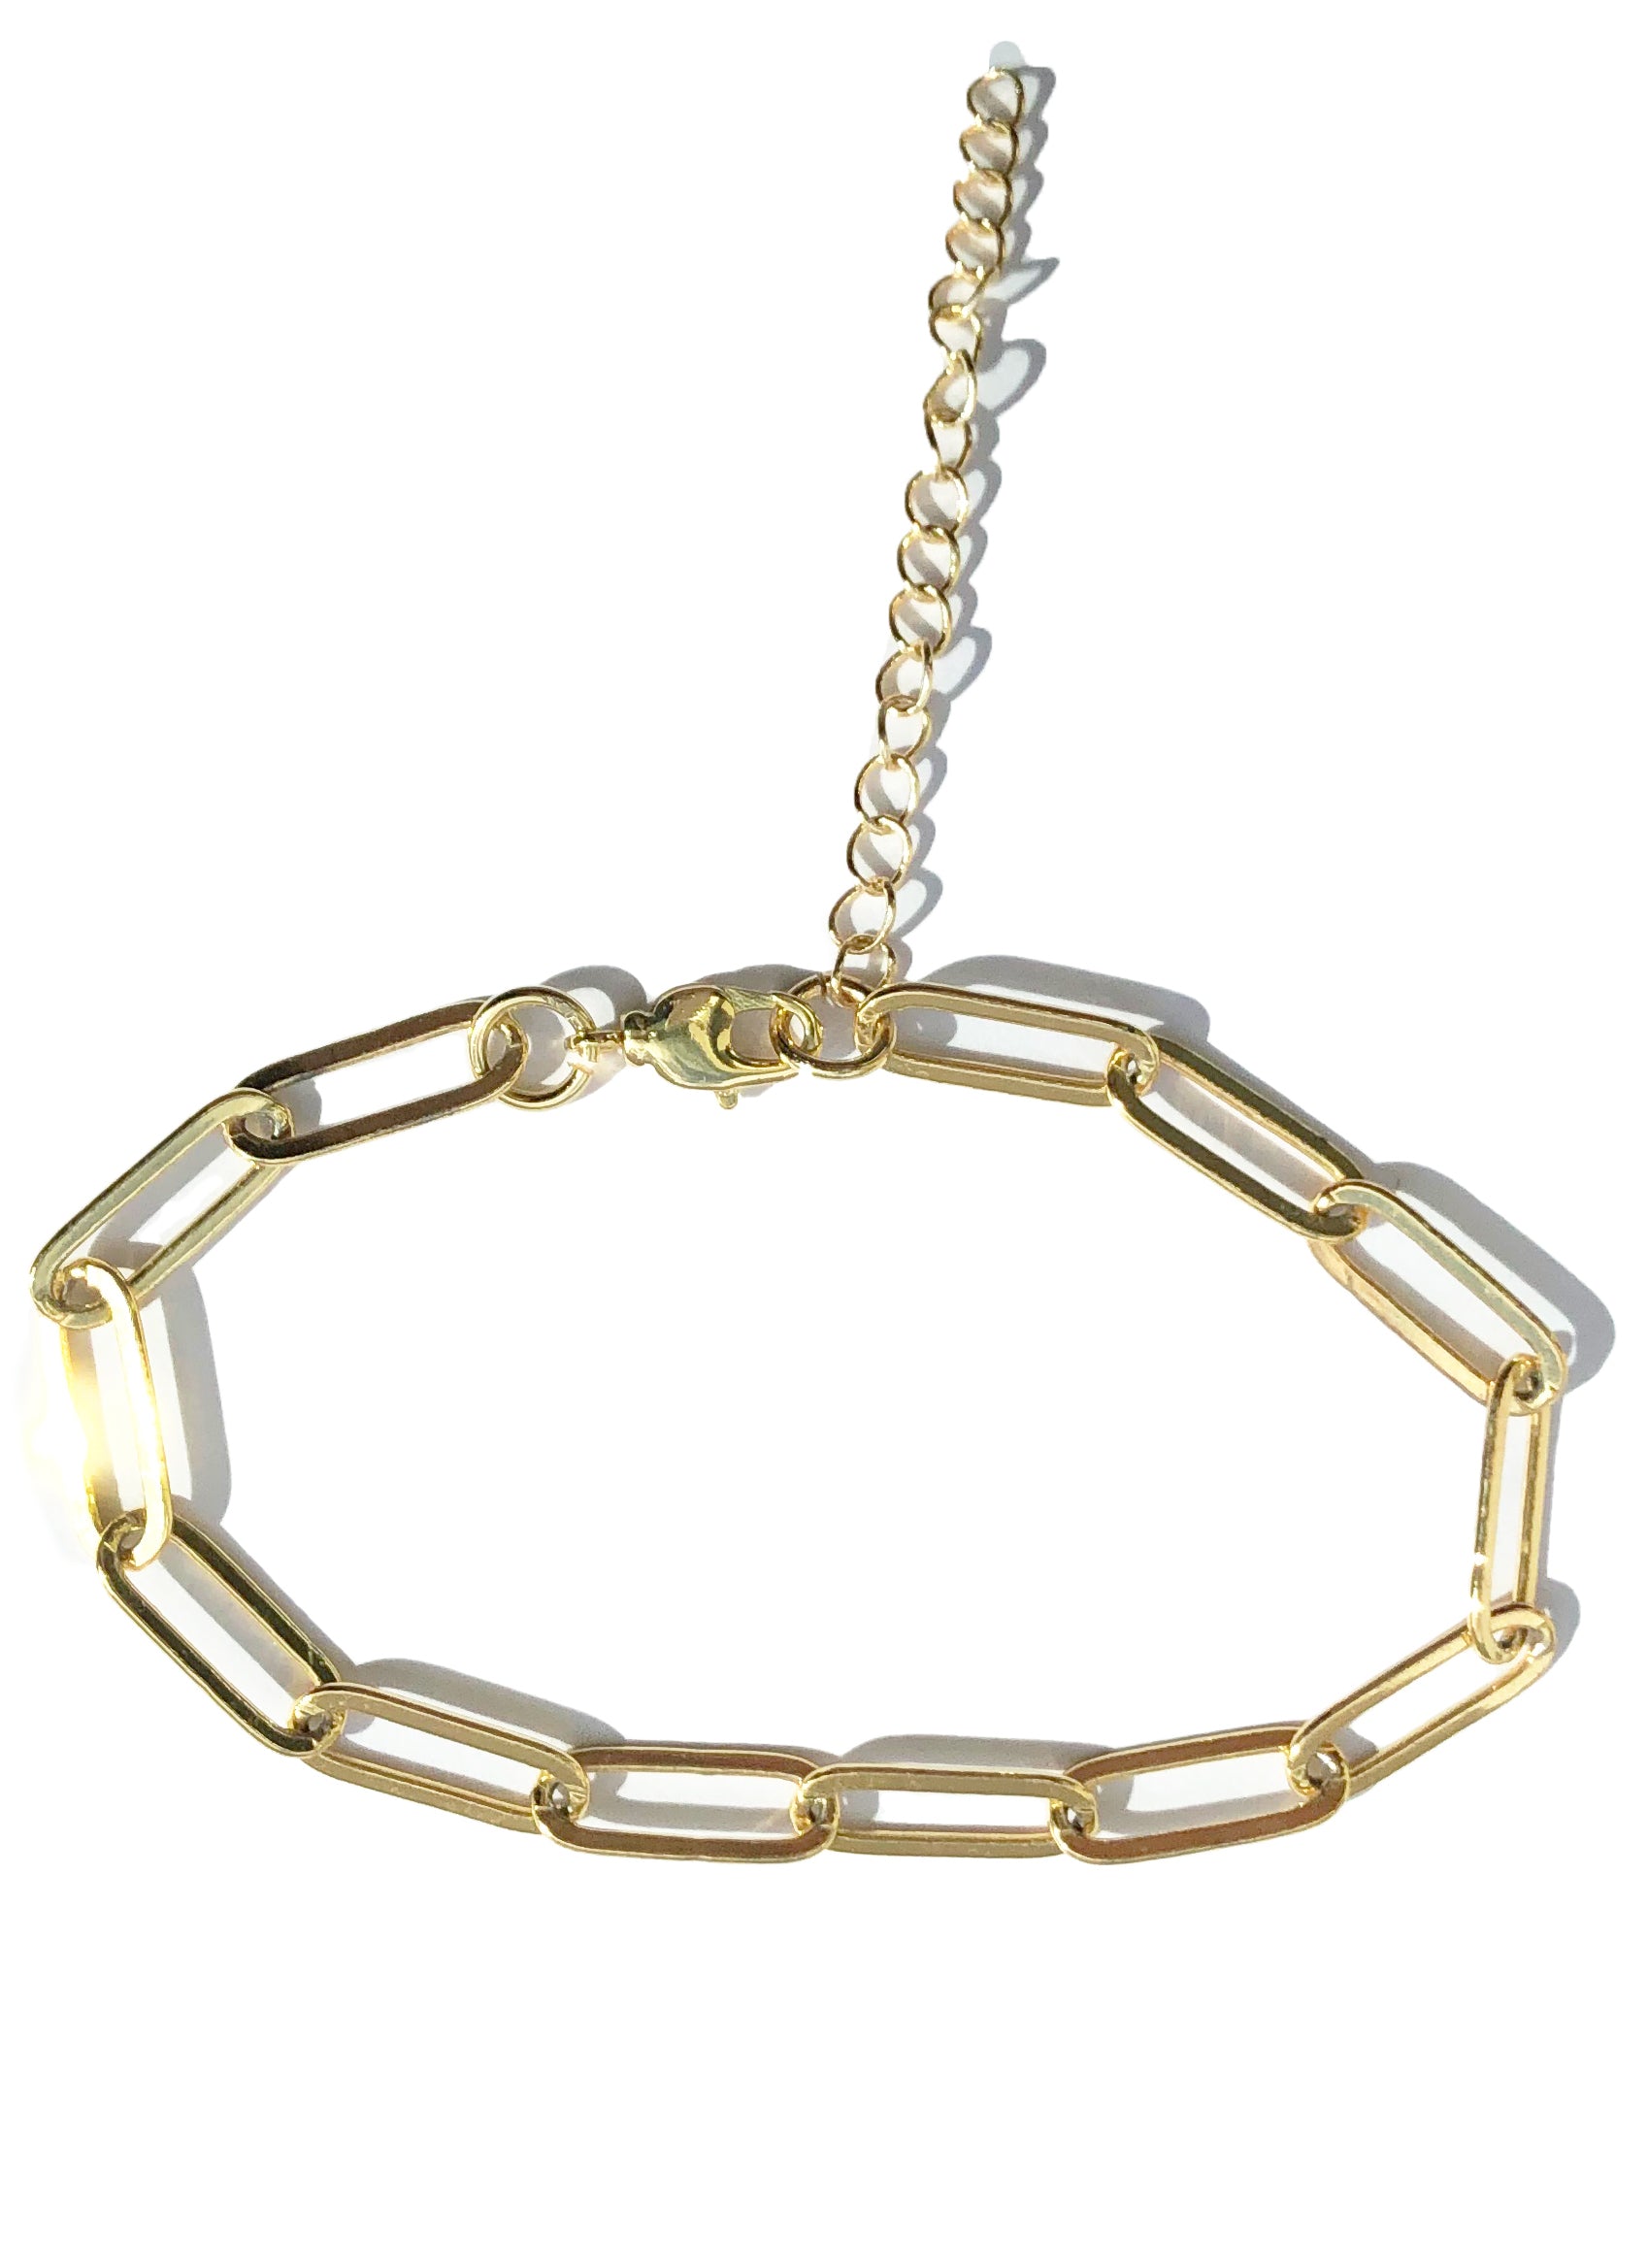 24K Gold Filled Bracelet | Hypoallergenic | Waterproof | Handmade fl Bracelet / Paperclip